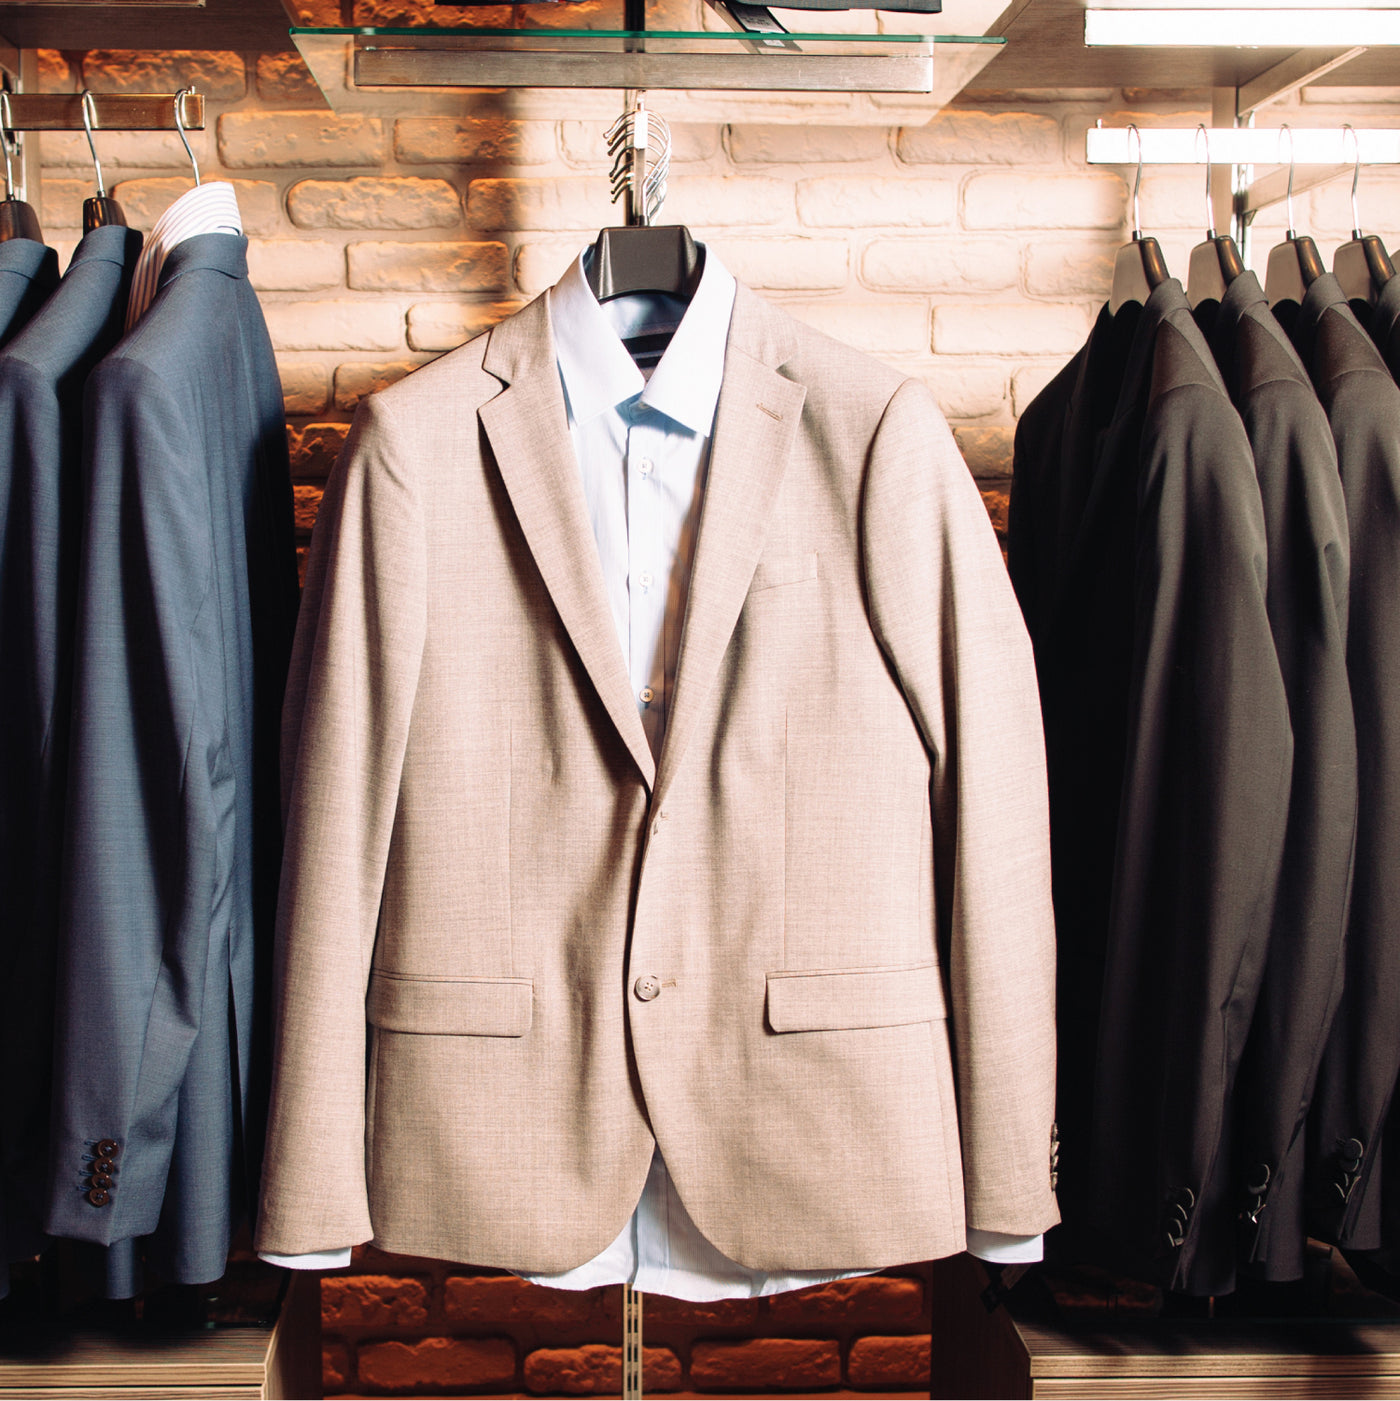 Suit Hangers & Coat Hangers in Bulk & Wholesale Prices